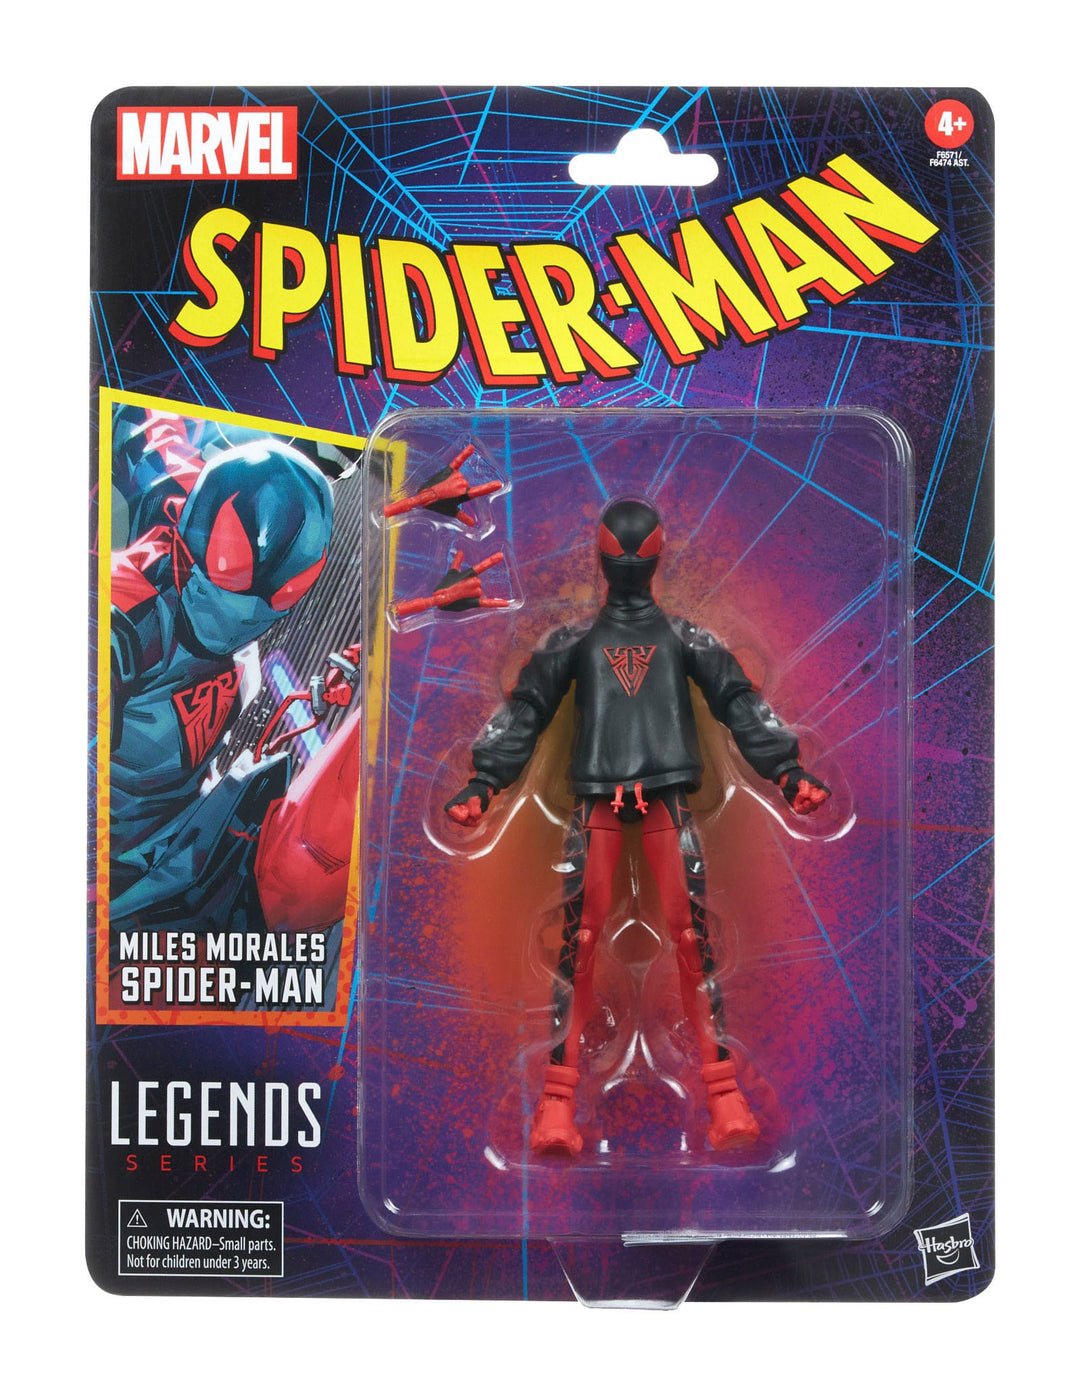 Marvel Legends Retro Spider-Man (7) Figures Complete Bundle